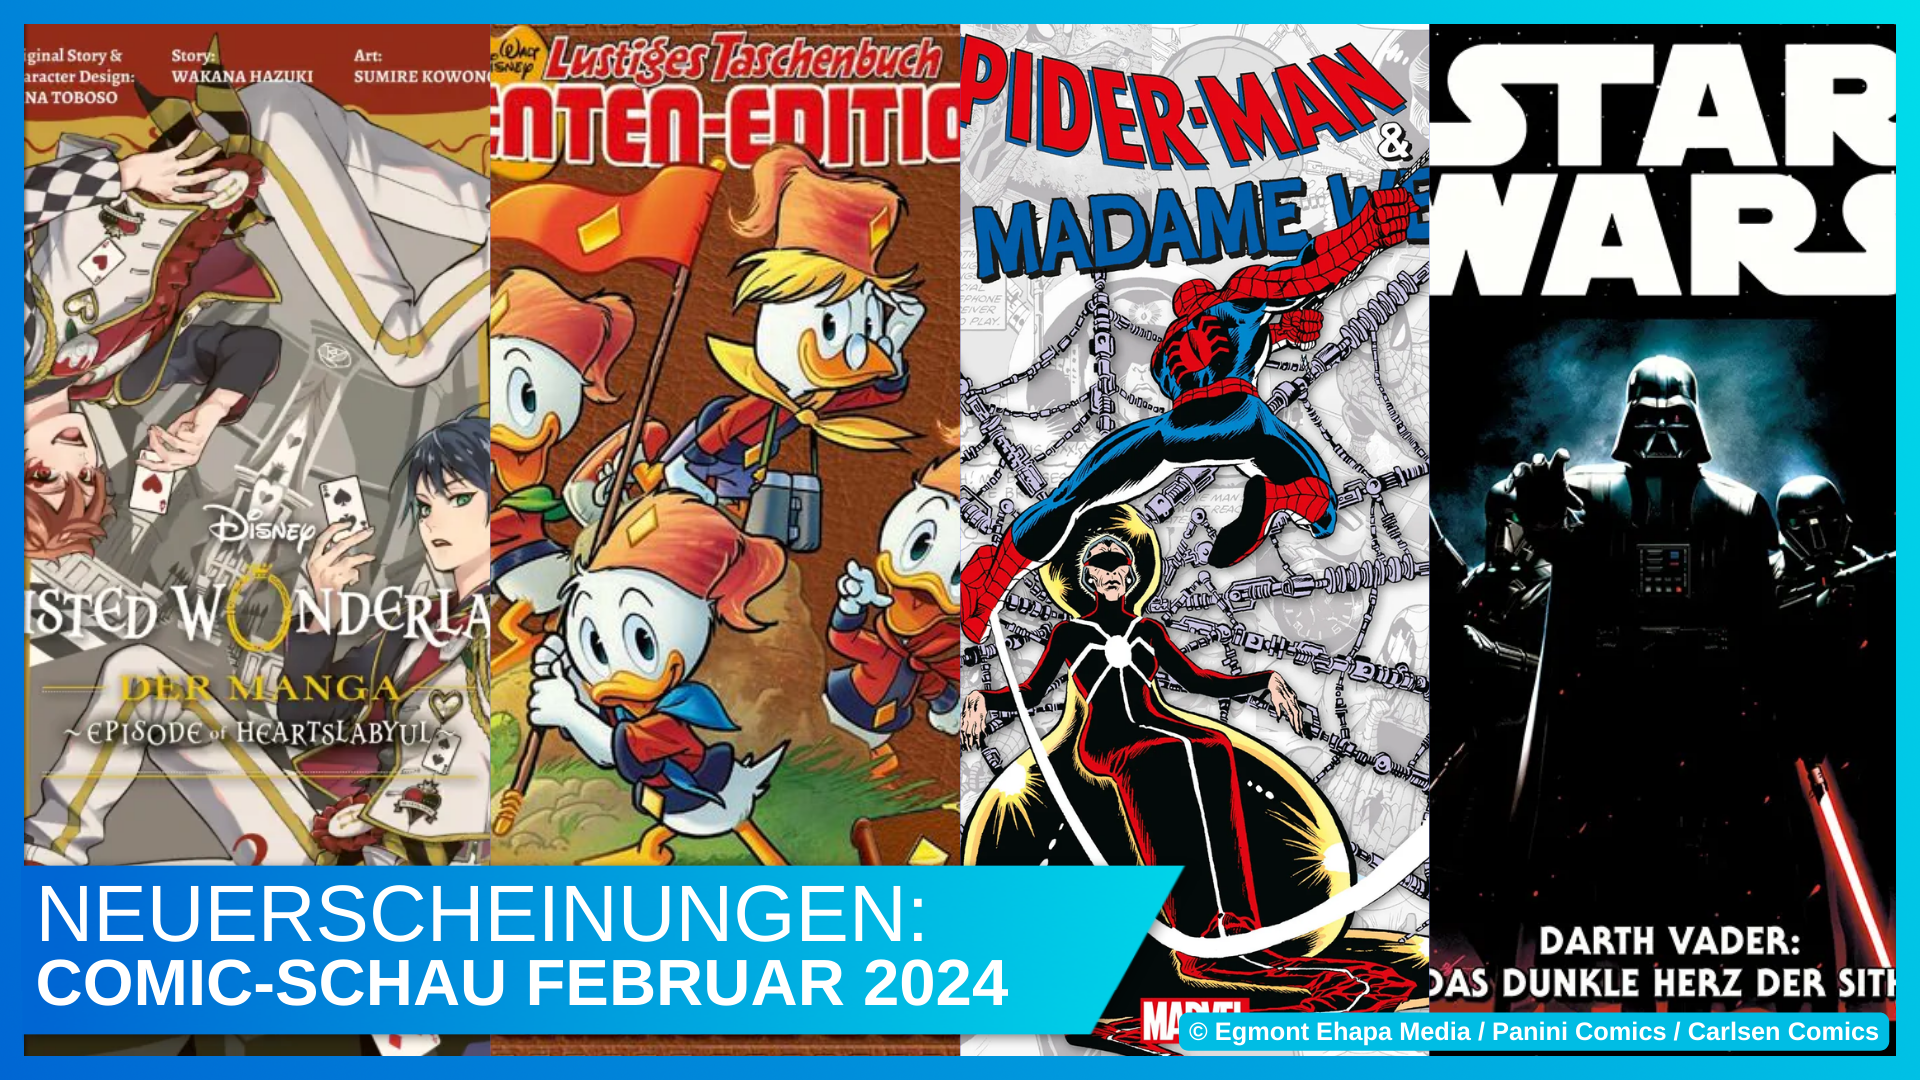 Disney Comic-Schau Februar 2024: Twisted Wonderland, Das schlaue Buch, Madame Web und Darth Vader